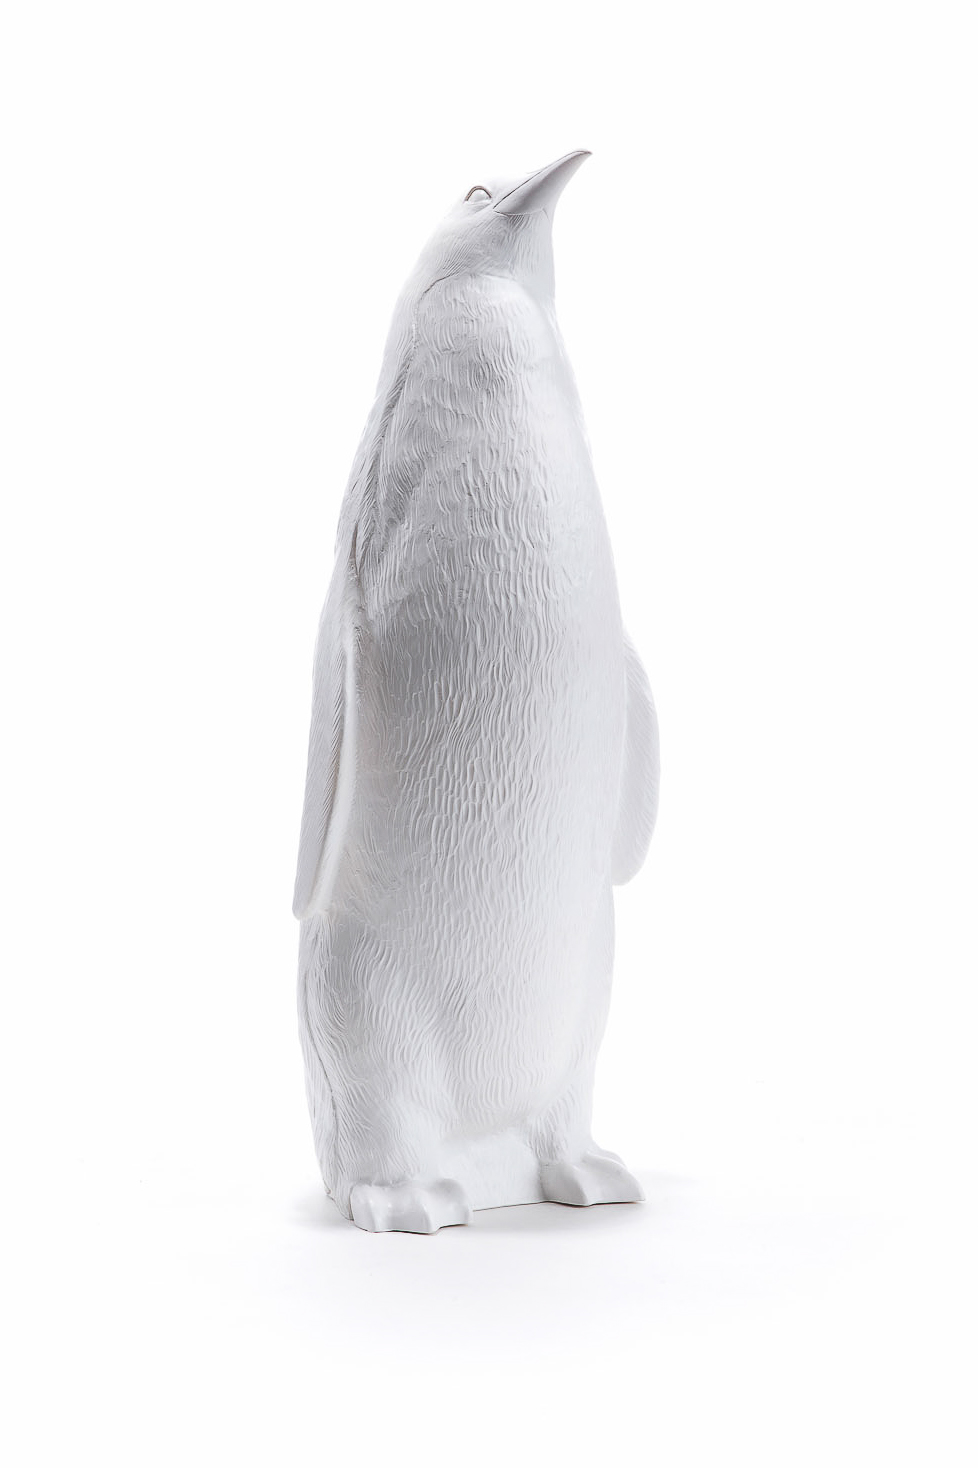 Pinguin in weiß, aufrecht